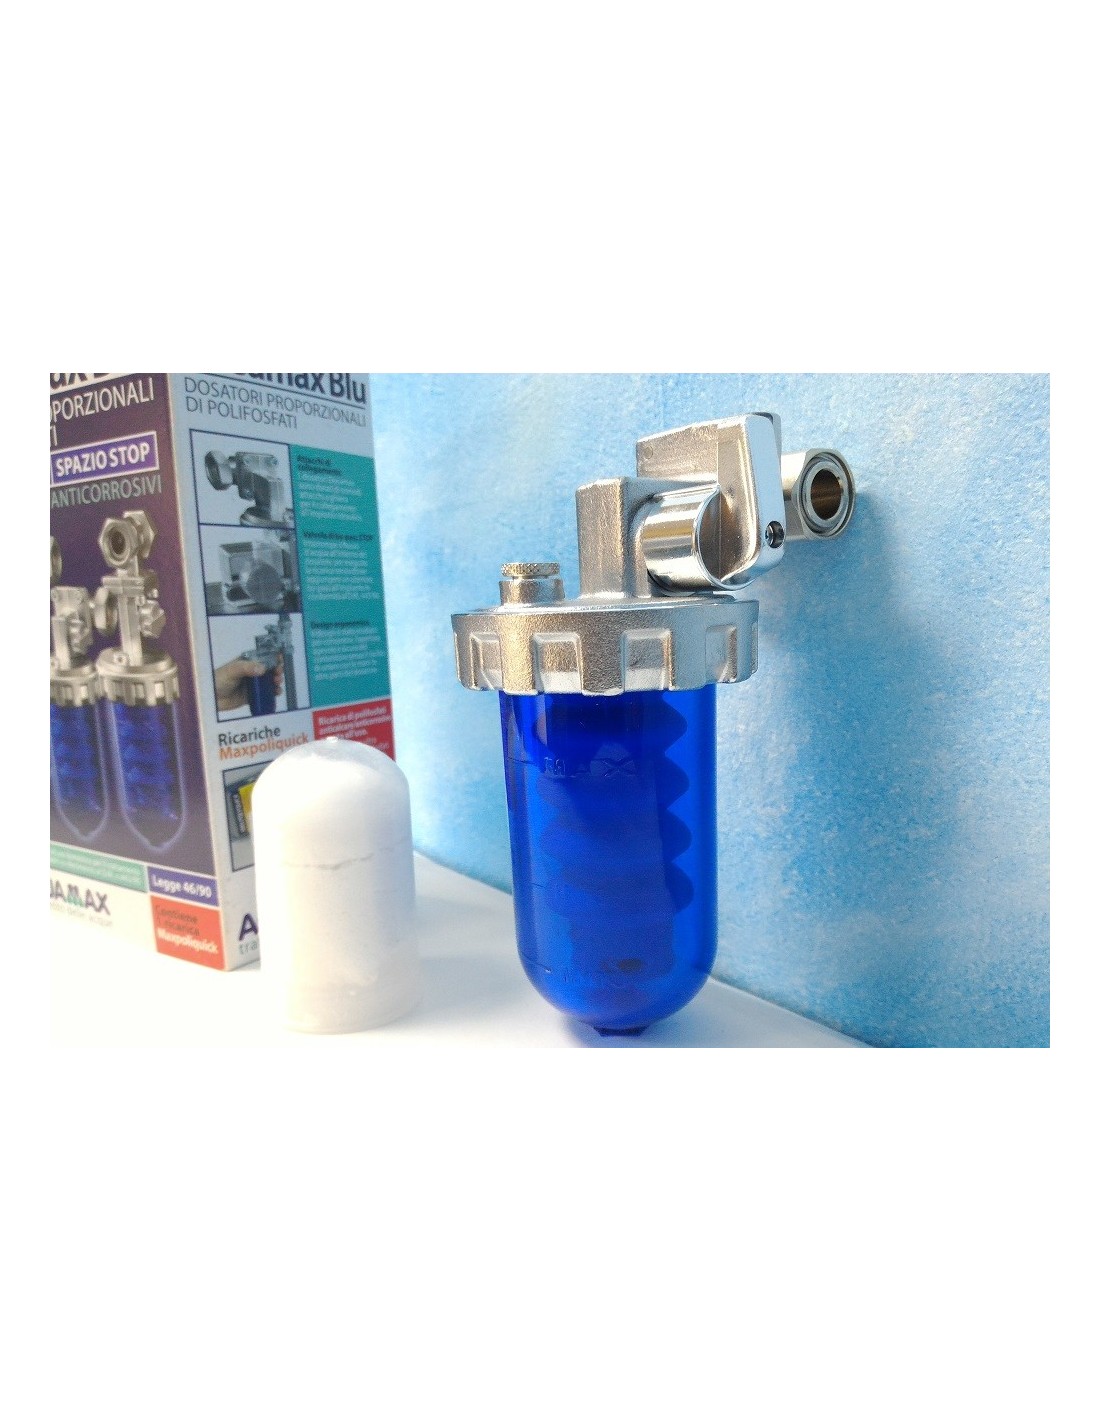 Filtro anticalcare dosatore di polifosfati Aquamax Dosamax Blu Stop